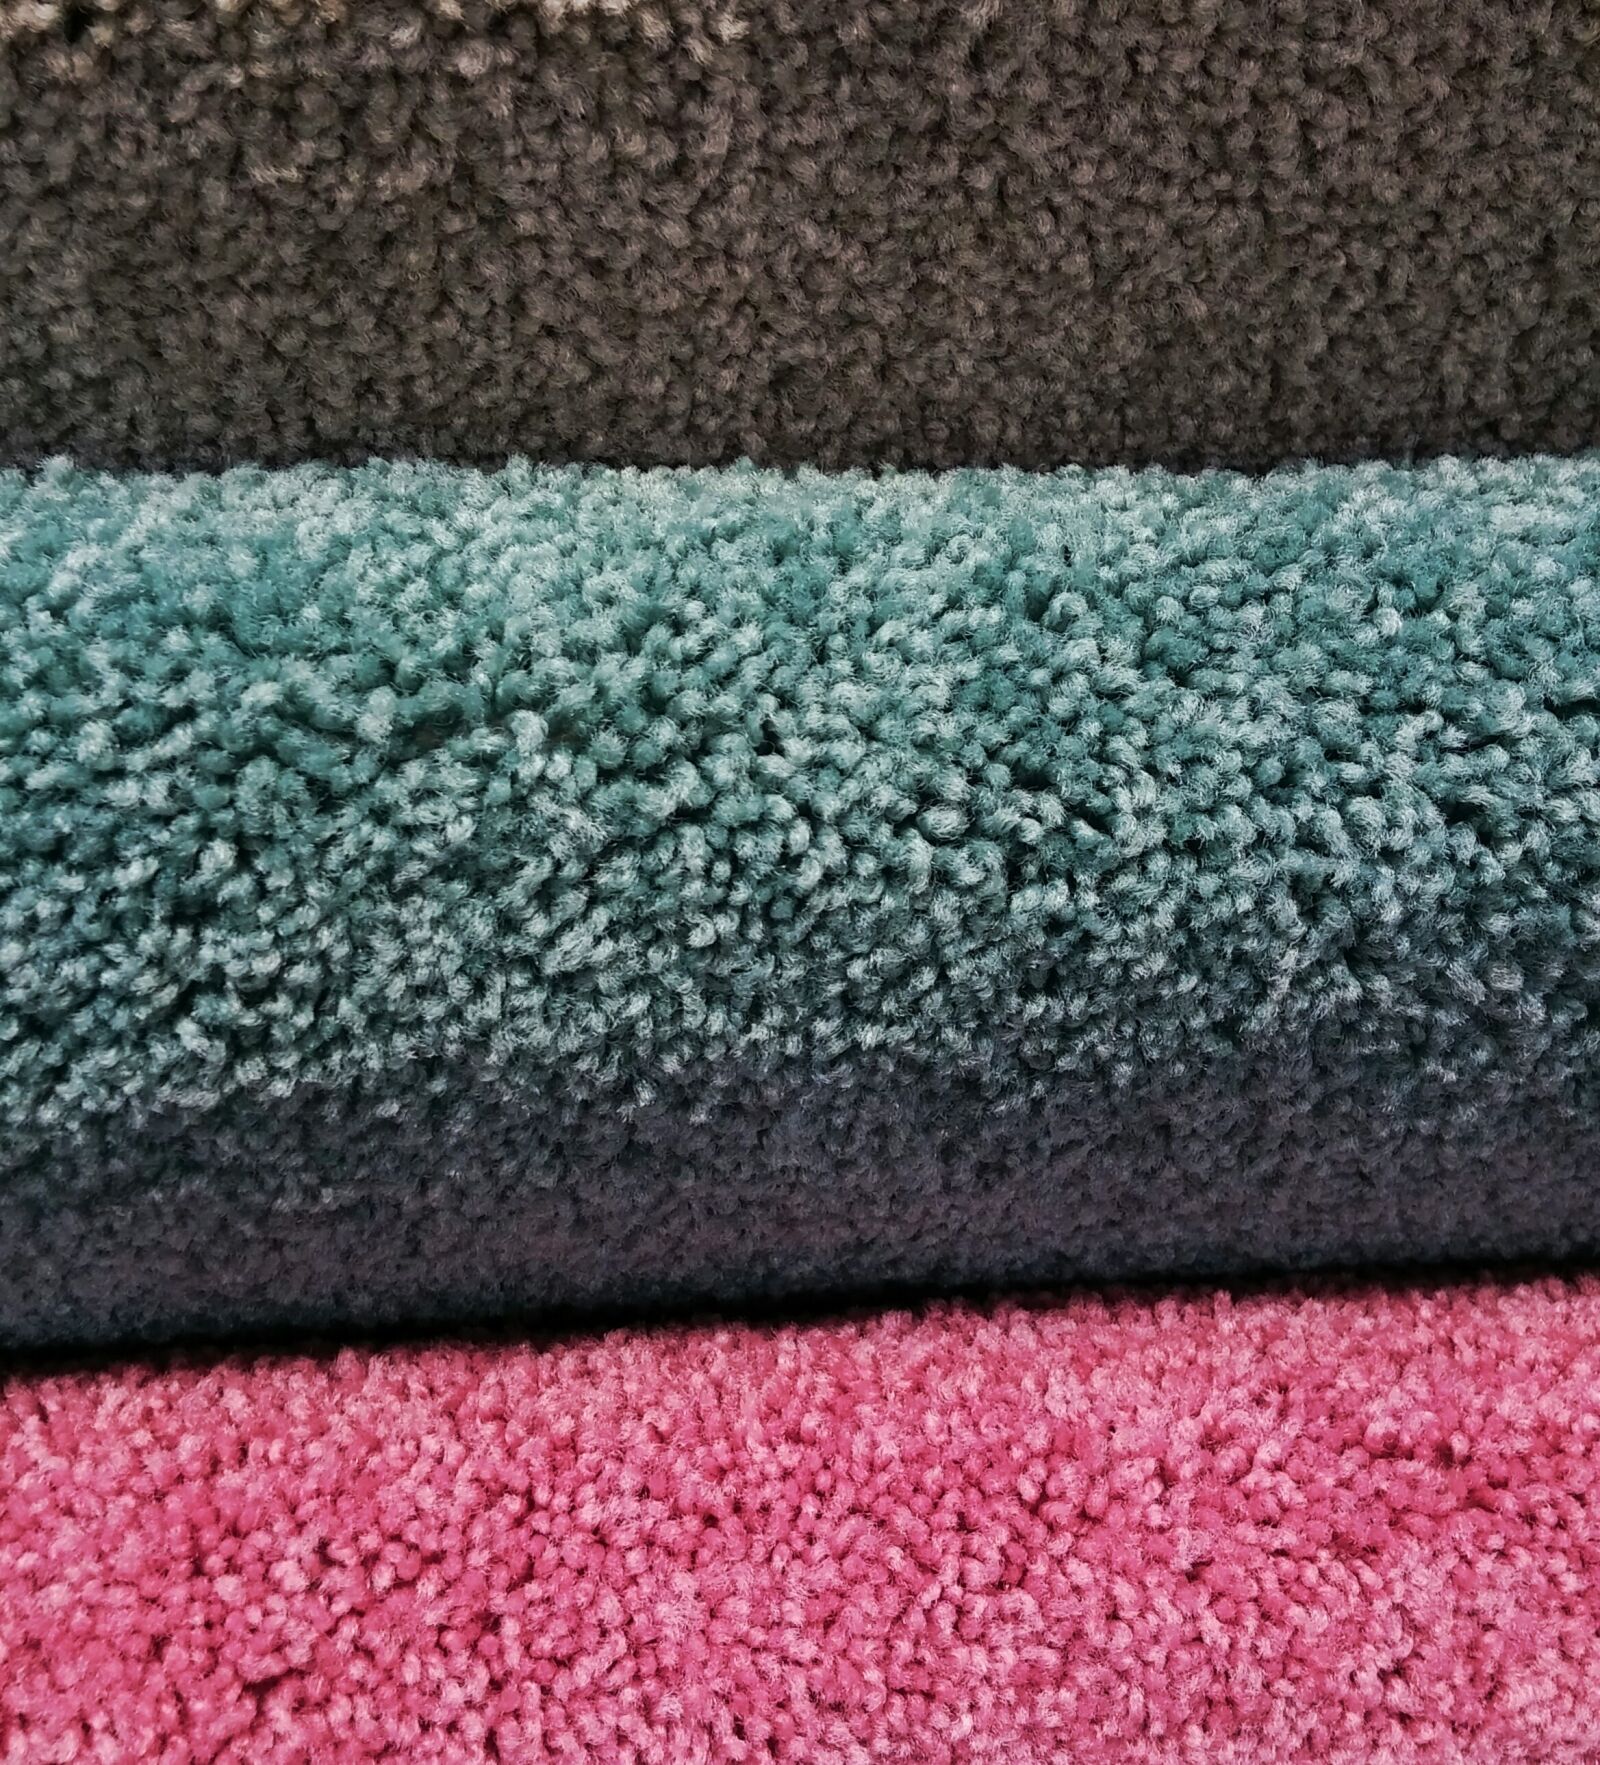 LG D80 sample photo. Carpet, moquette, pile photography